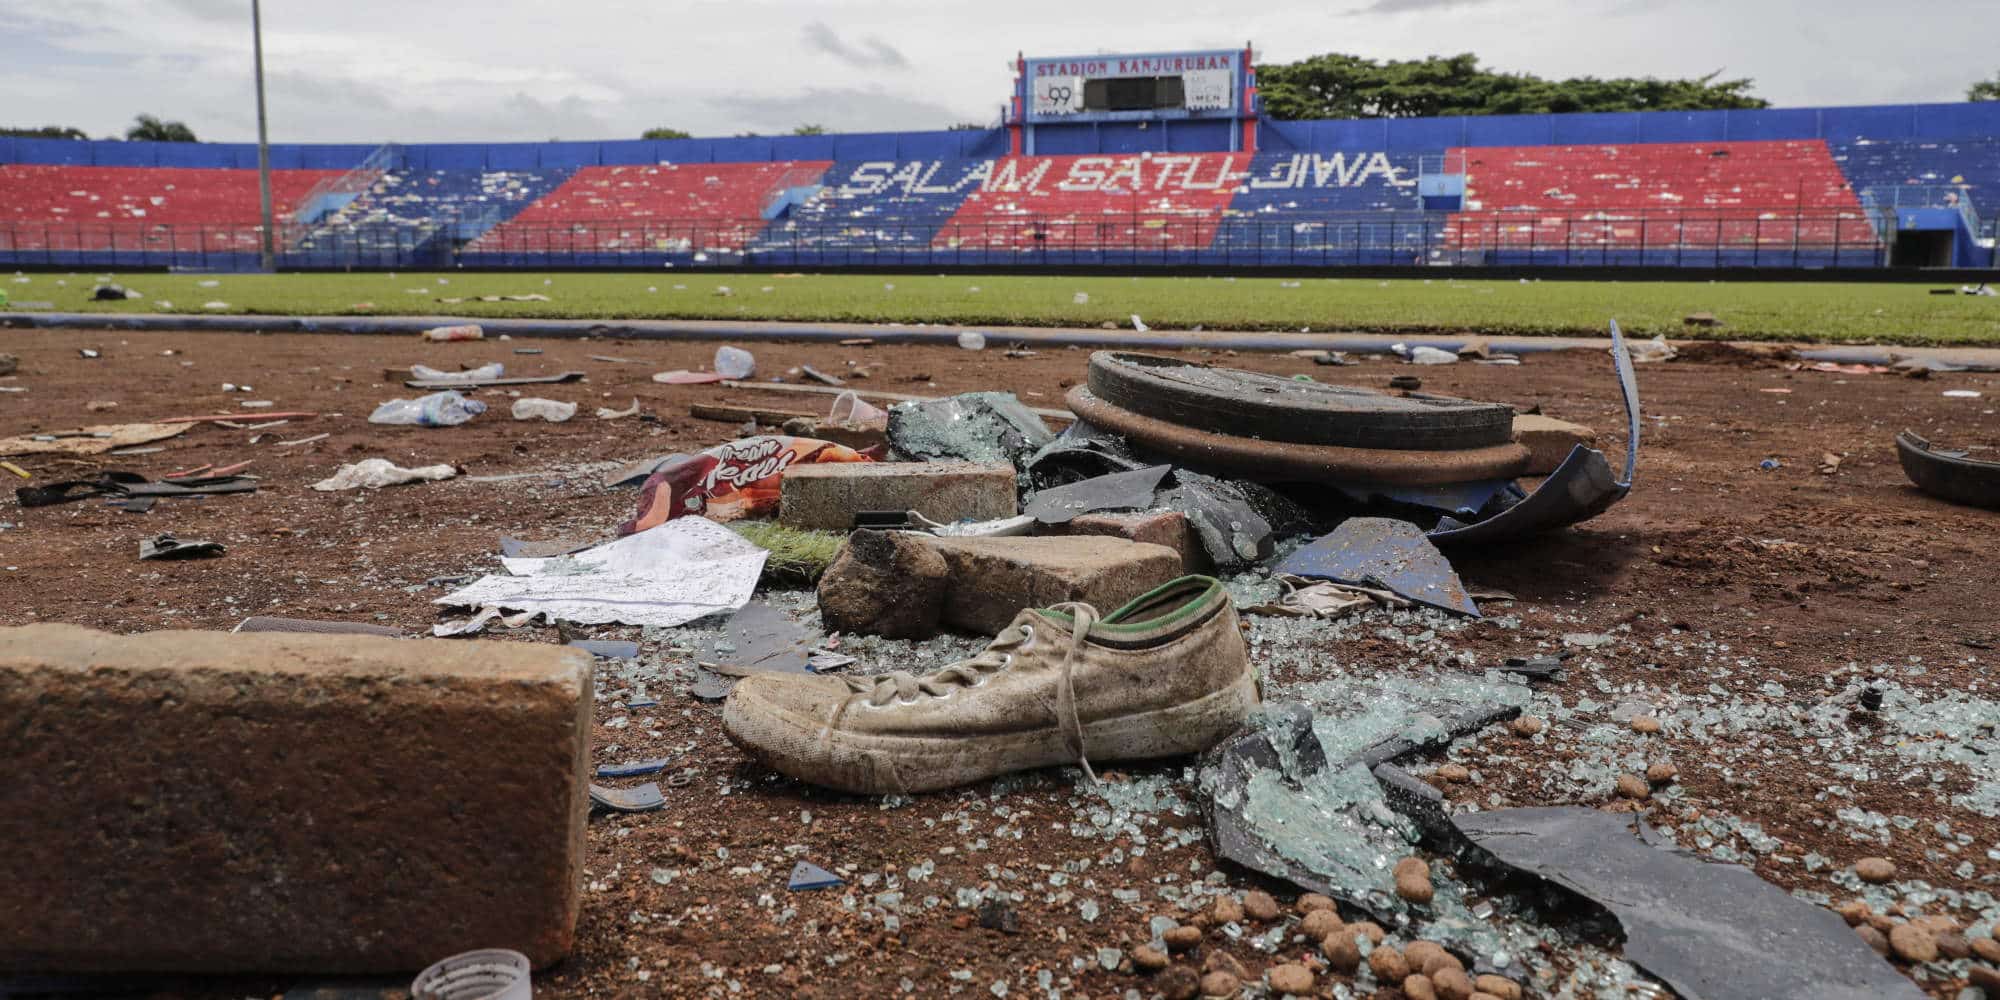 Εικόνα καταστροφής μετά τα τραγικά επεισόδια σε γήπεδο στην Ινδονησία